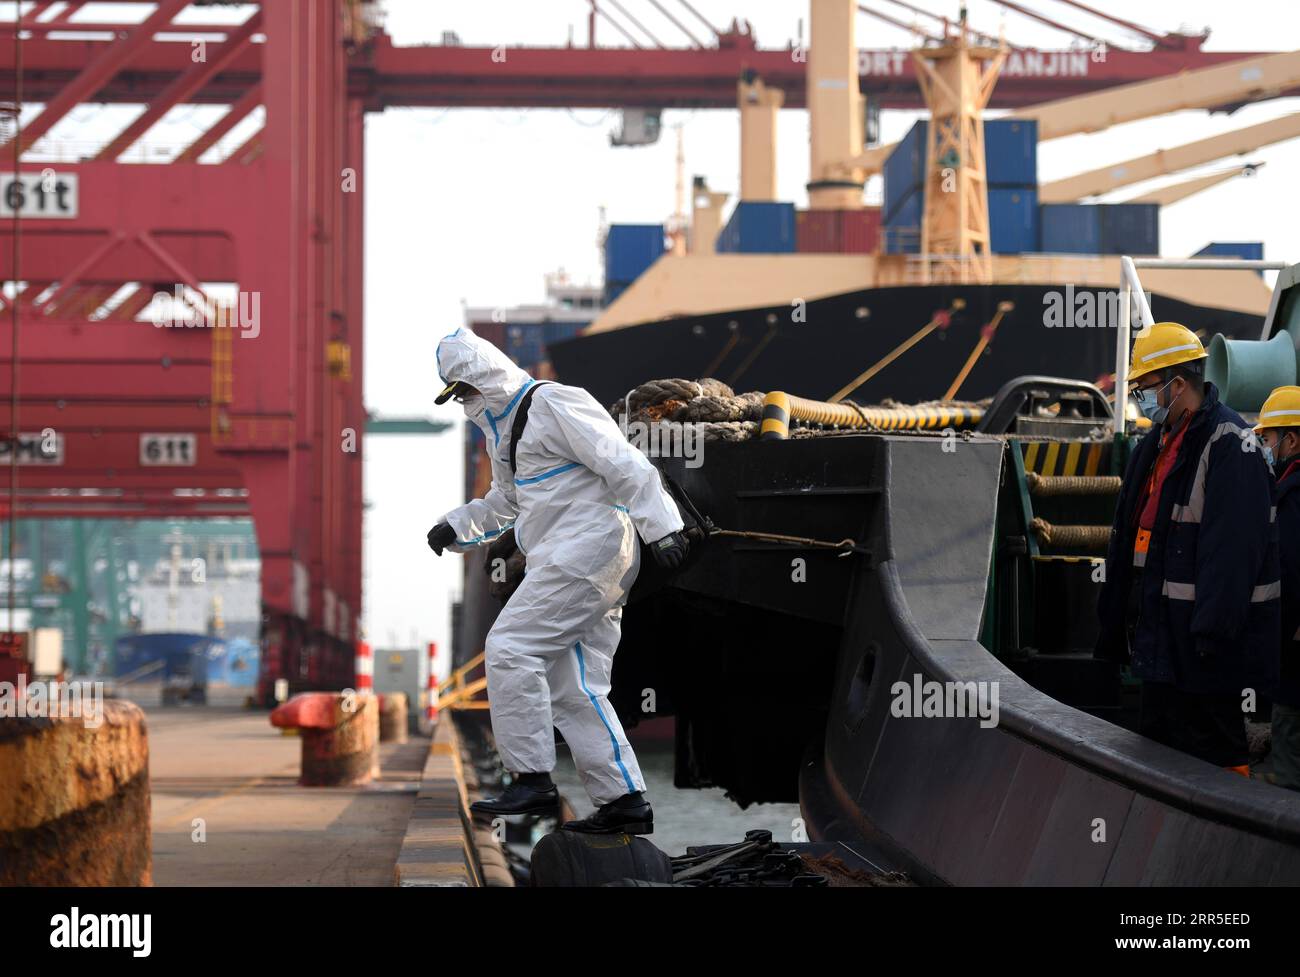 210103 -- TIANJIN, 3. Januar 2021 -- Li Zhantao, ein Pilot des Tianjin Port Pilot Center, kehrt nach einer Mission im nordchinesischen Tianjin am 28. Dezember 2020 zum Dock zurück. Mit einer Temperatur von minus 10 Grad Celsius klettern die Piloten auf Seilleitern von fast 20 Metern Länge, um das Deck der Schiffe zu erreichen, die sie durch Gewässer im und um den Hafen von Tianjin führen sollen. Die chinesischen Gesetze schreiben die obligatorische Pilotierung von ausländischen Schiffen vor, die in Häfen des Landes einlaufen oder aus ihnen auslaufen. Lotsendienste sind auch ein praktischer Bedarf für ausländische Schiffe im Hafen von Tianjin, der für sein vielbeschäftigtes und kompliziertes Schiff bekannt ist Stockfoto